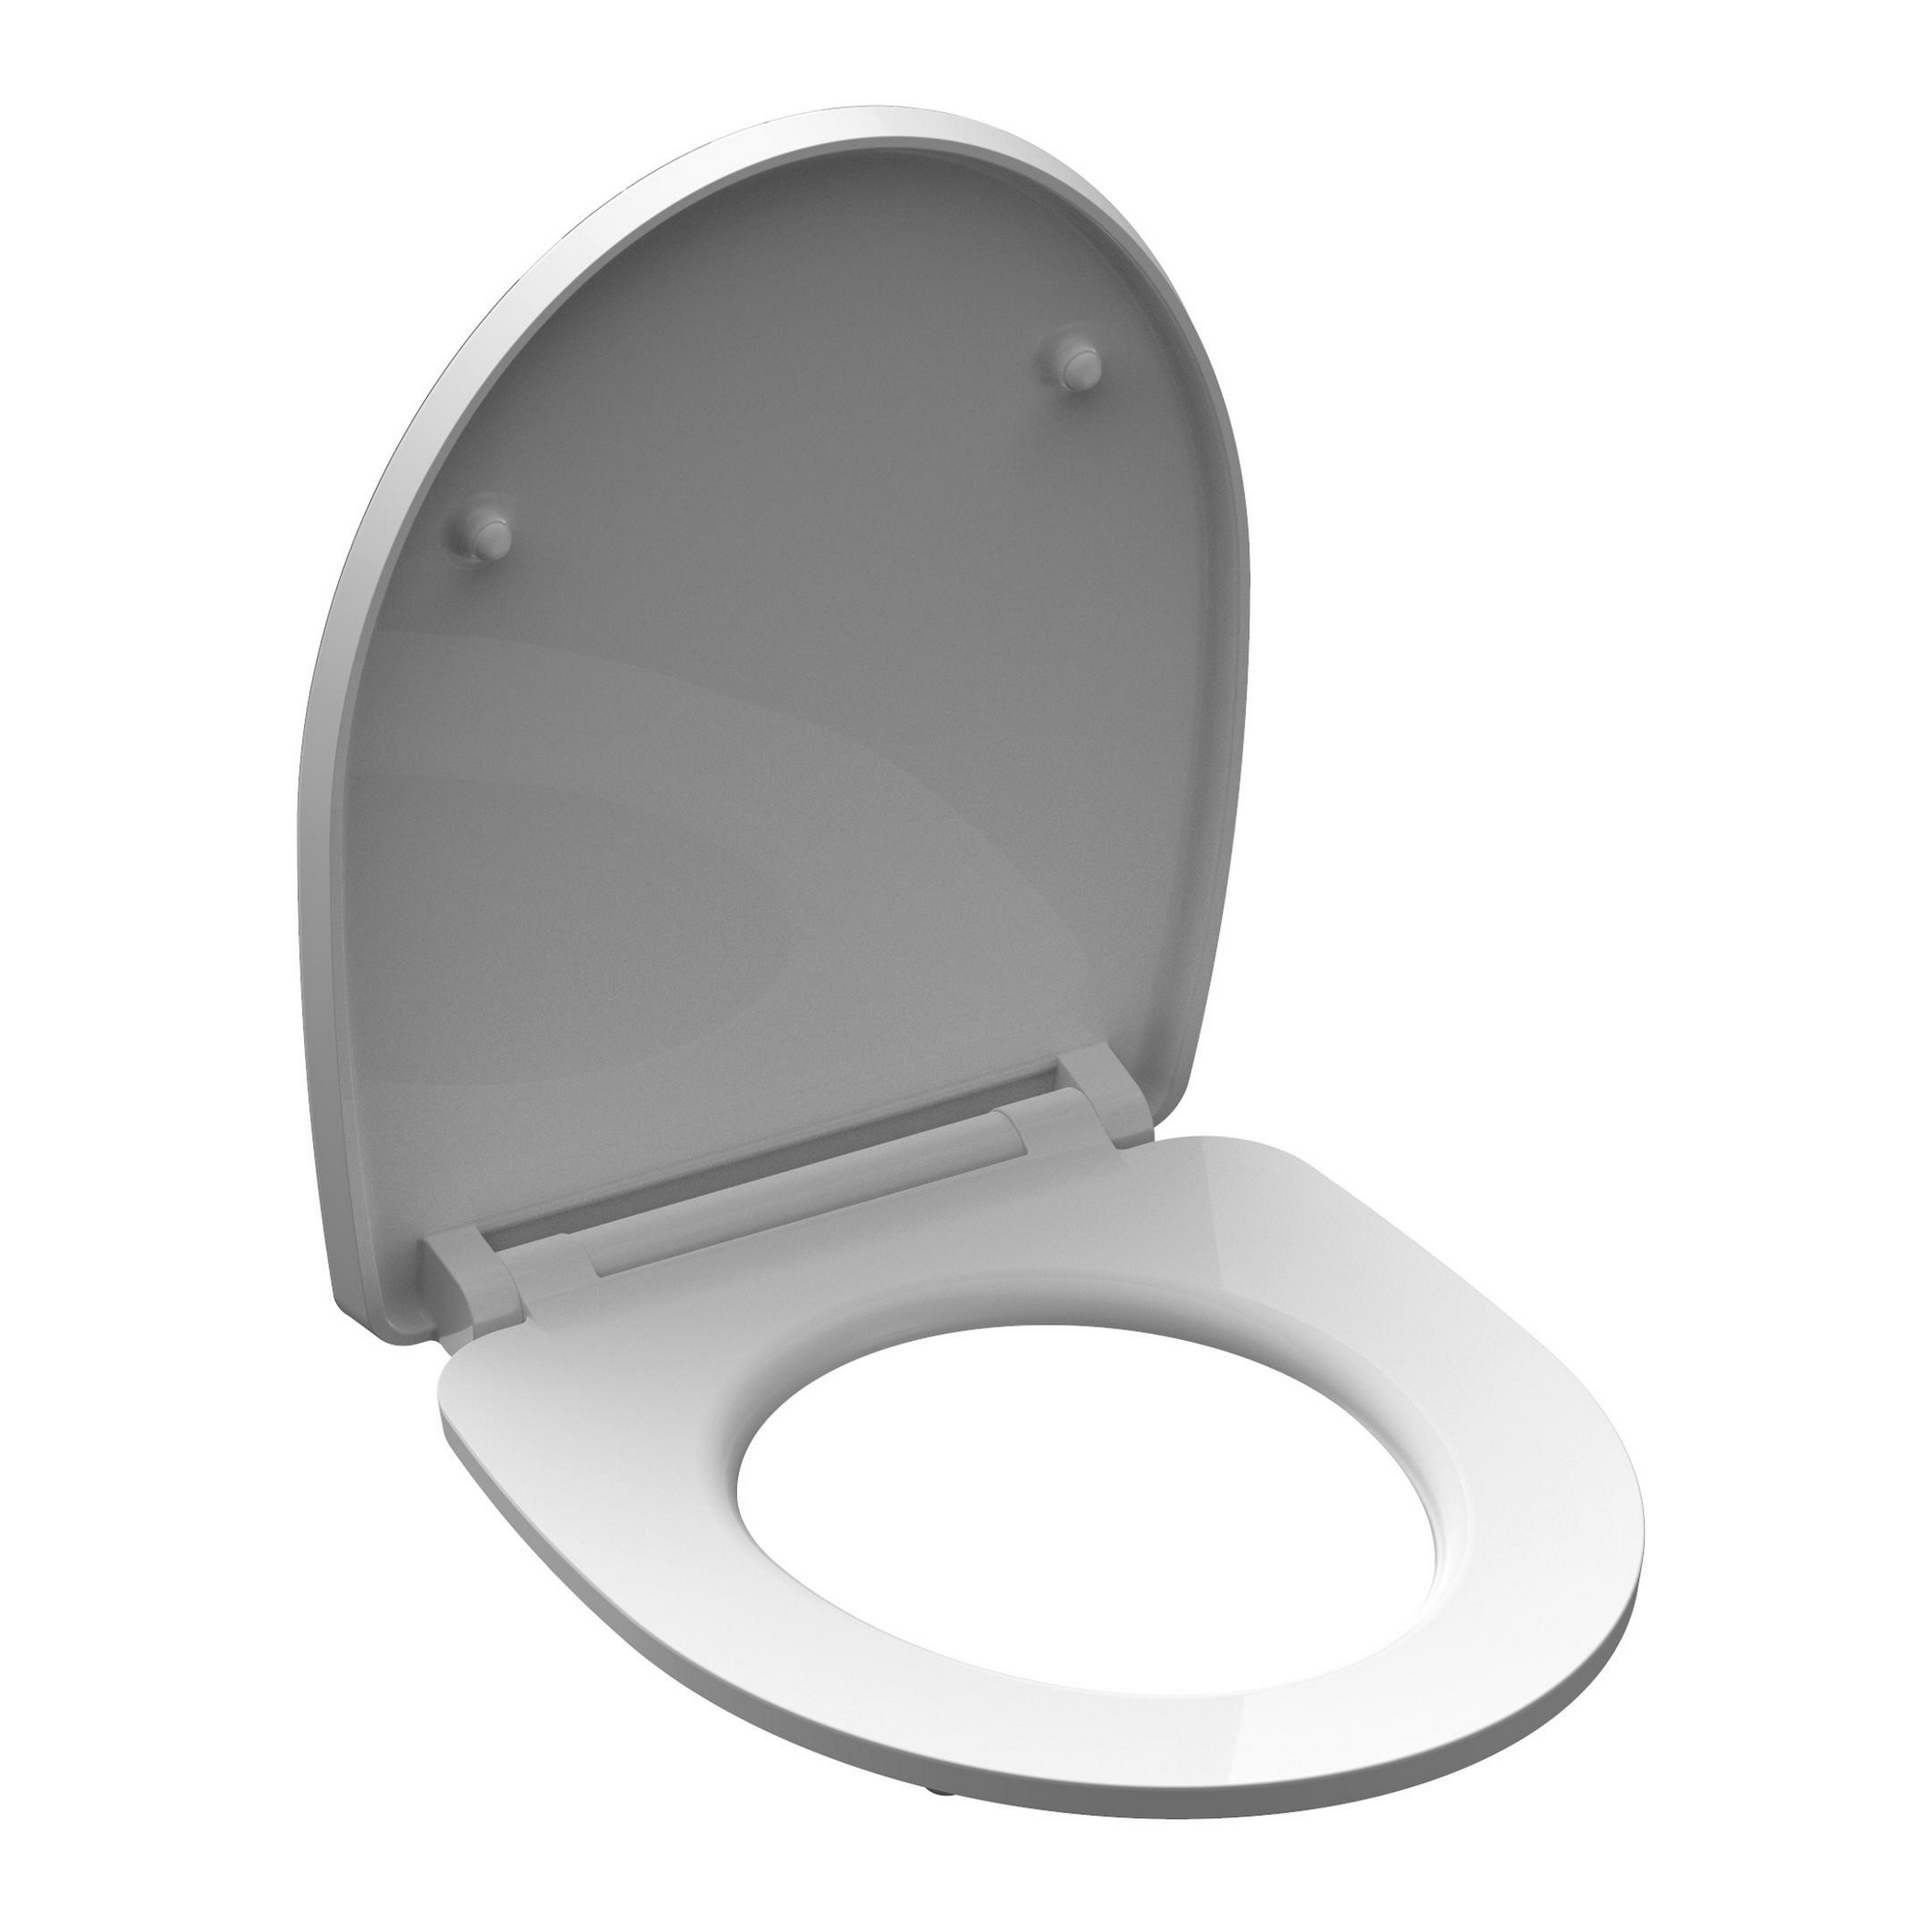 WC-Sitz 'Raindrop HG' mit Absenkautomatik grau/grün 37,5 x 45 cm + product picture